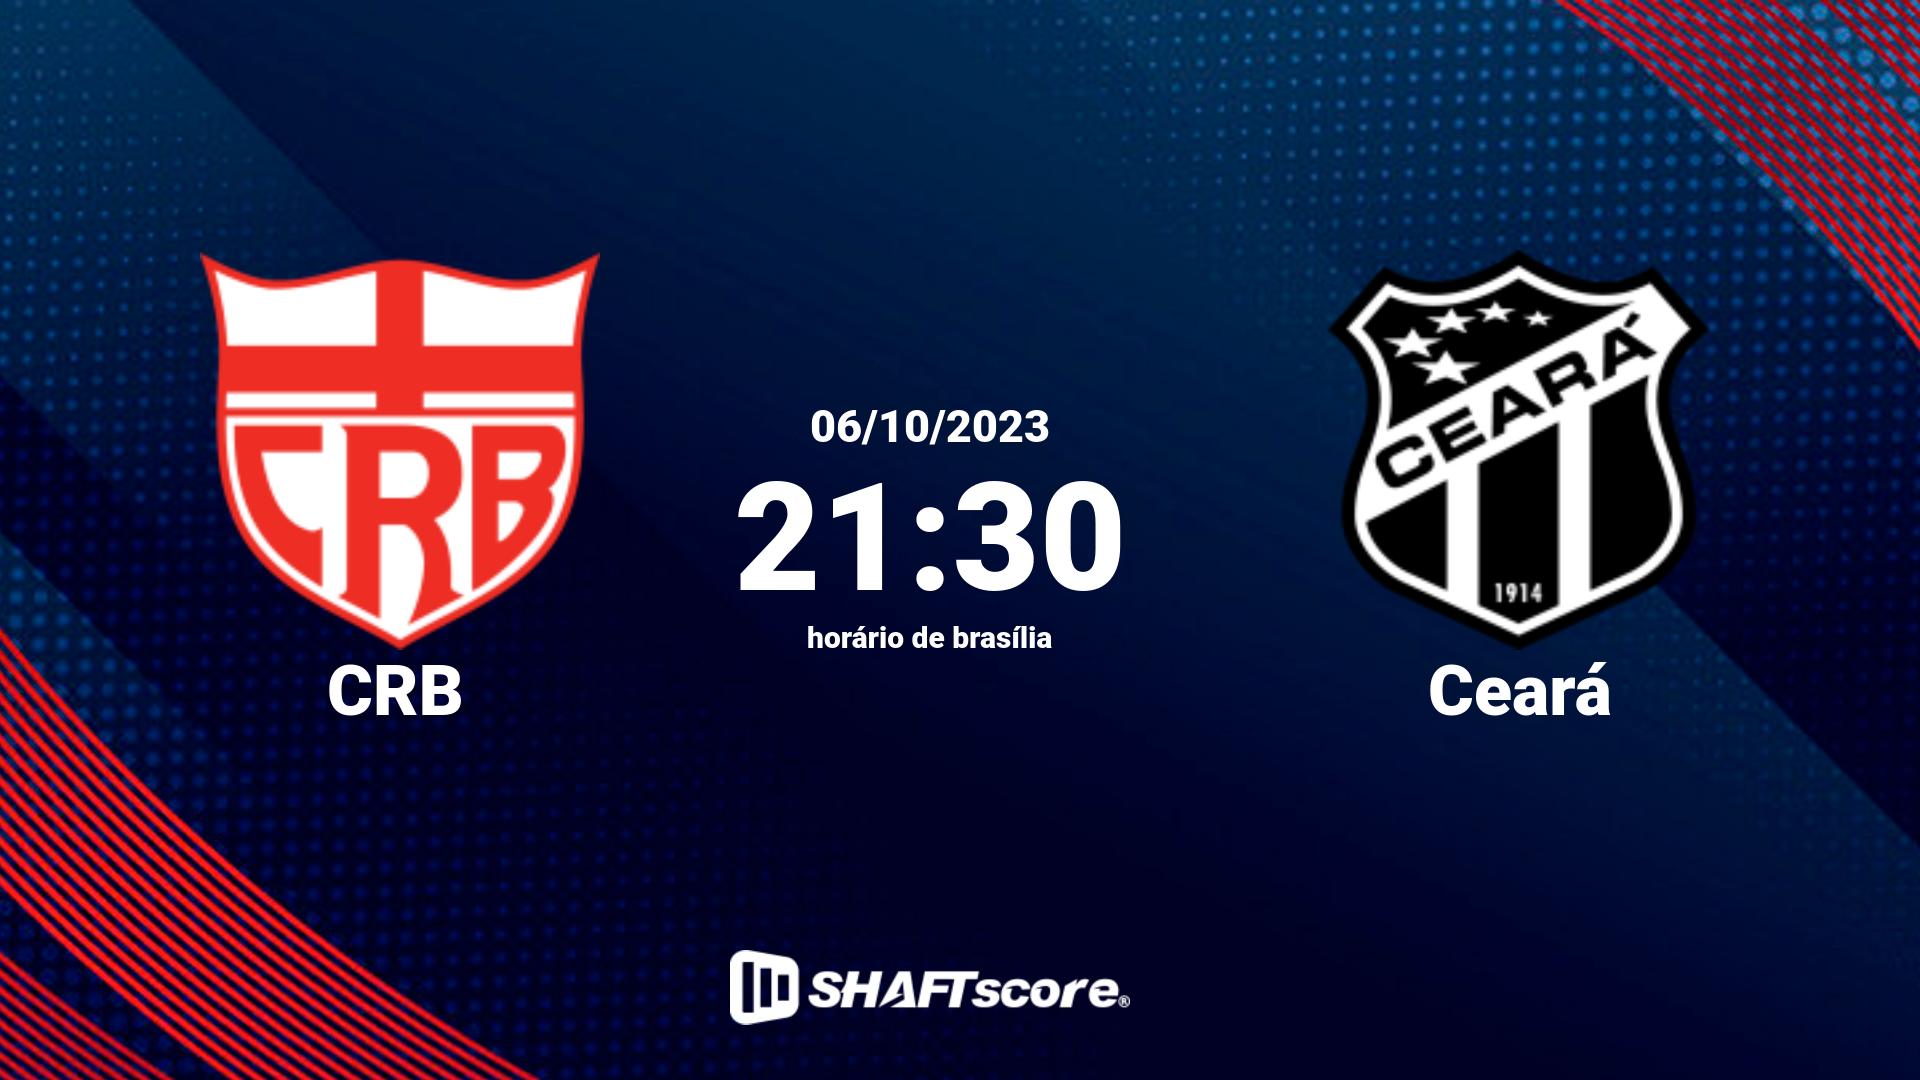 Estatísticas do jogo CRB vs Ceará 06.10 21:30